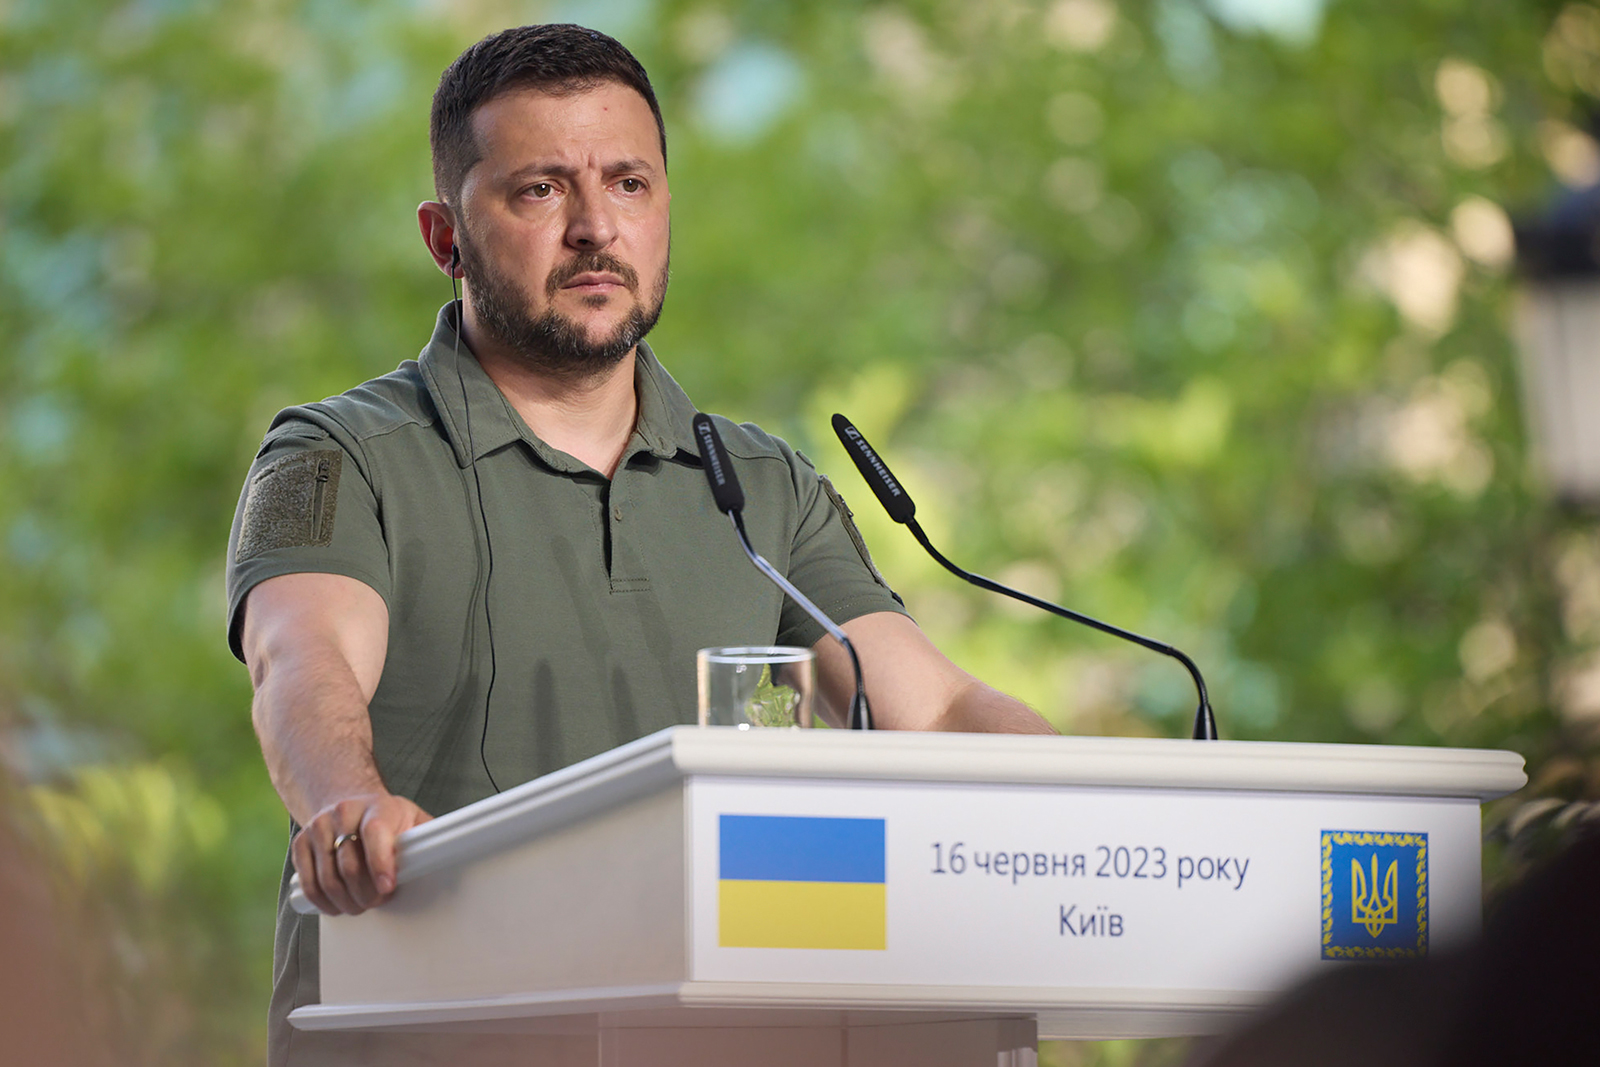 Volodymyr Zelensky attends a news conference in Kyiv, Ukraine, on June 16.